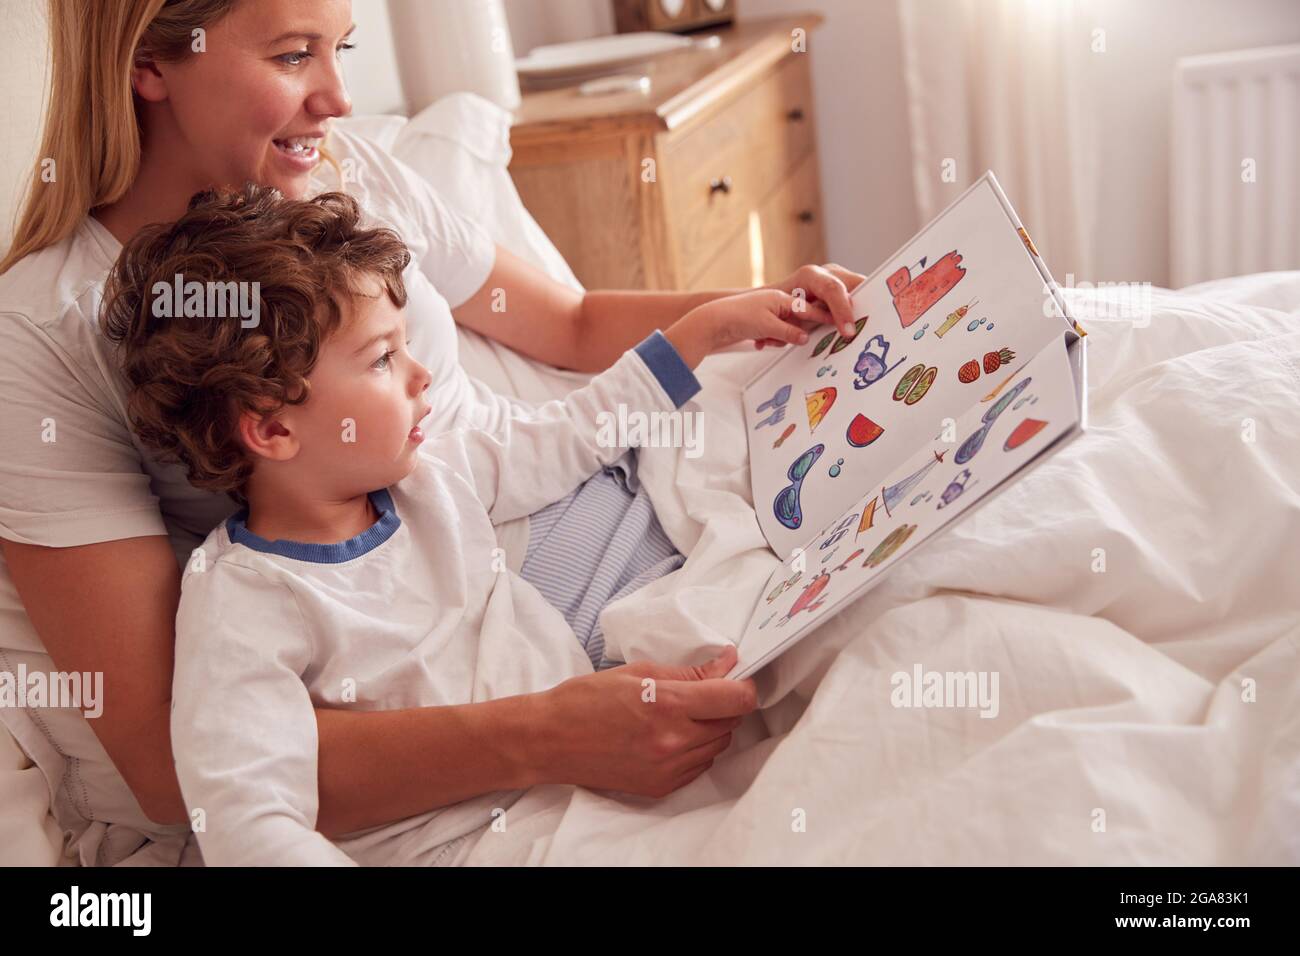 Mutter Im Schlafzimmer Beim Betrachen Des Bilderbuches Mit Jungem Sohn Im Schlafanzug Stockfoto